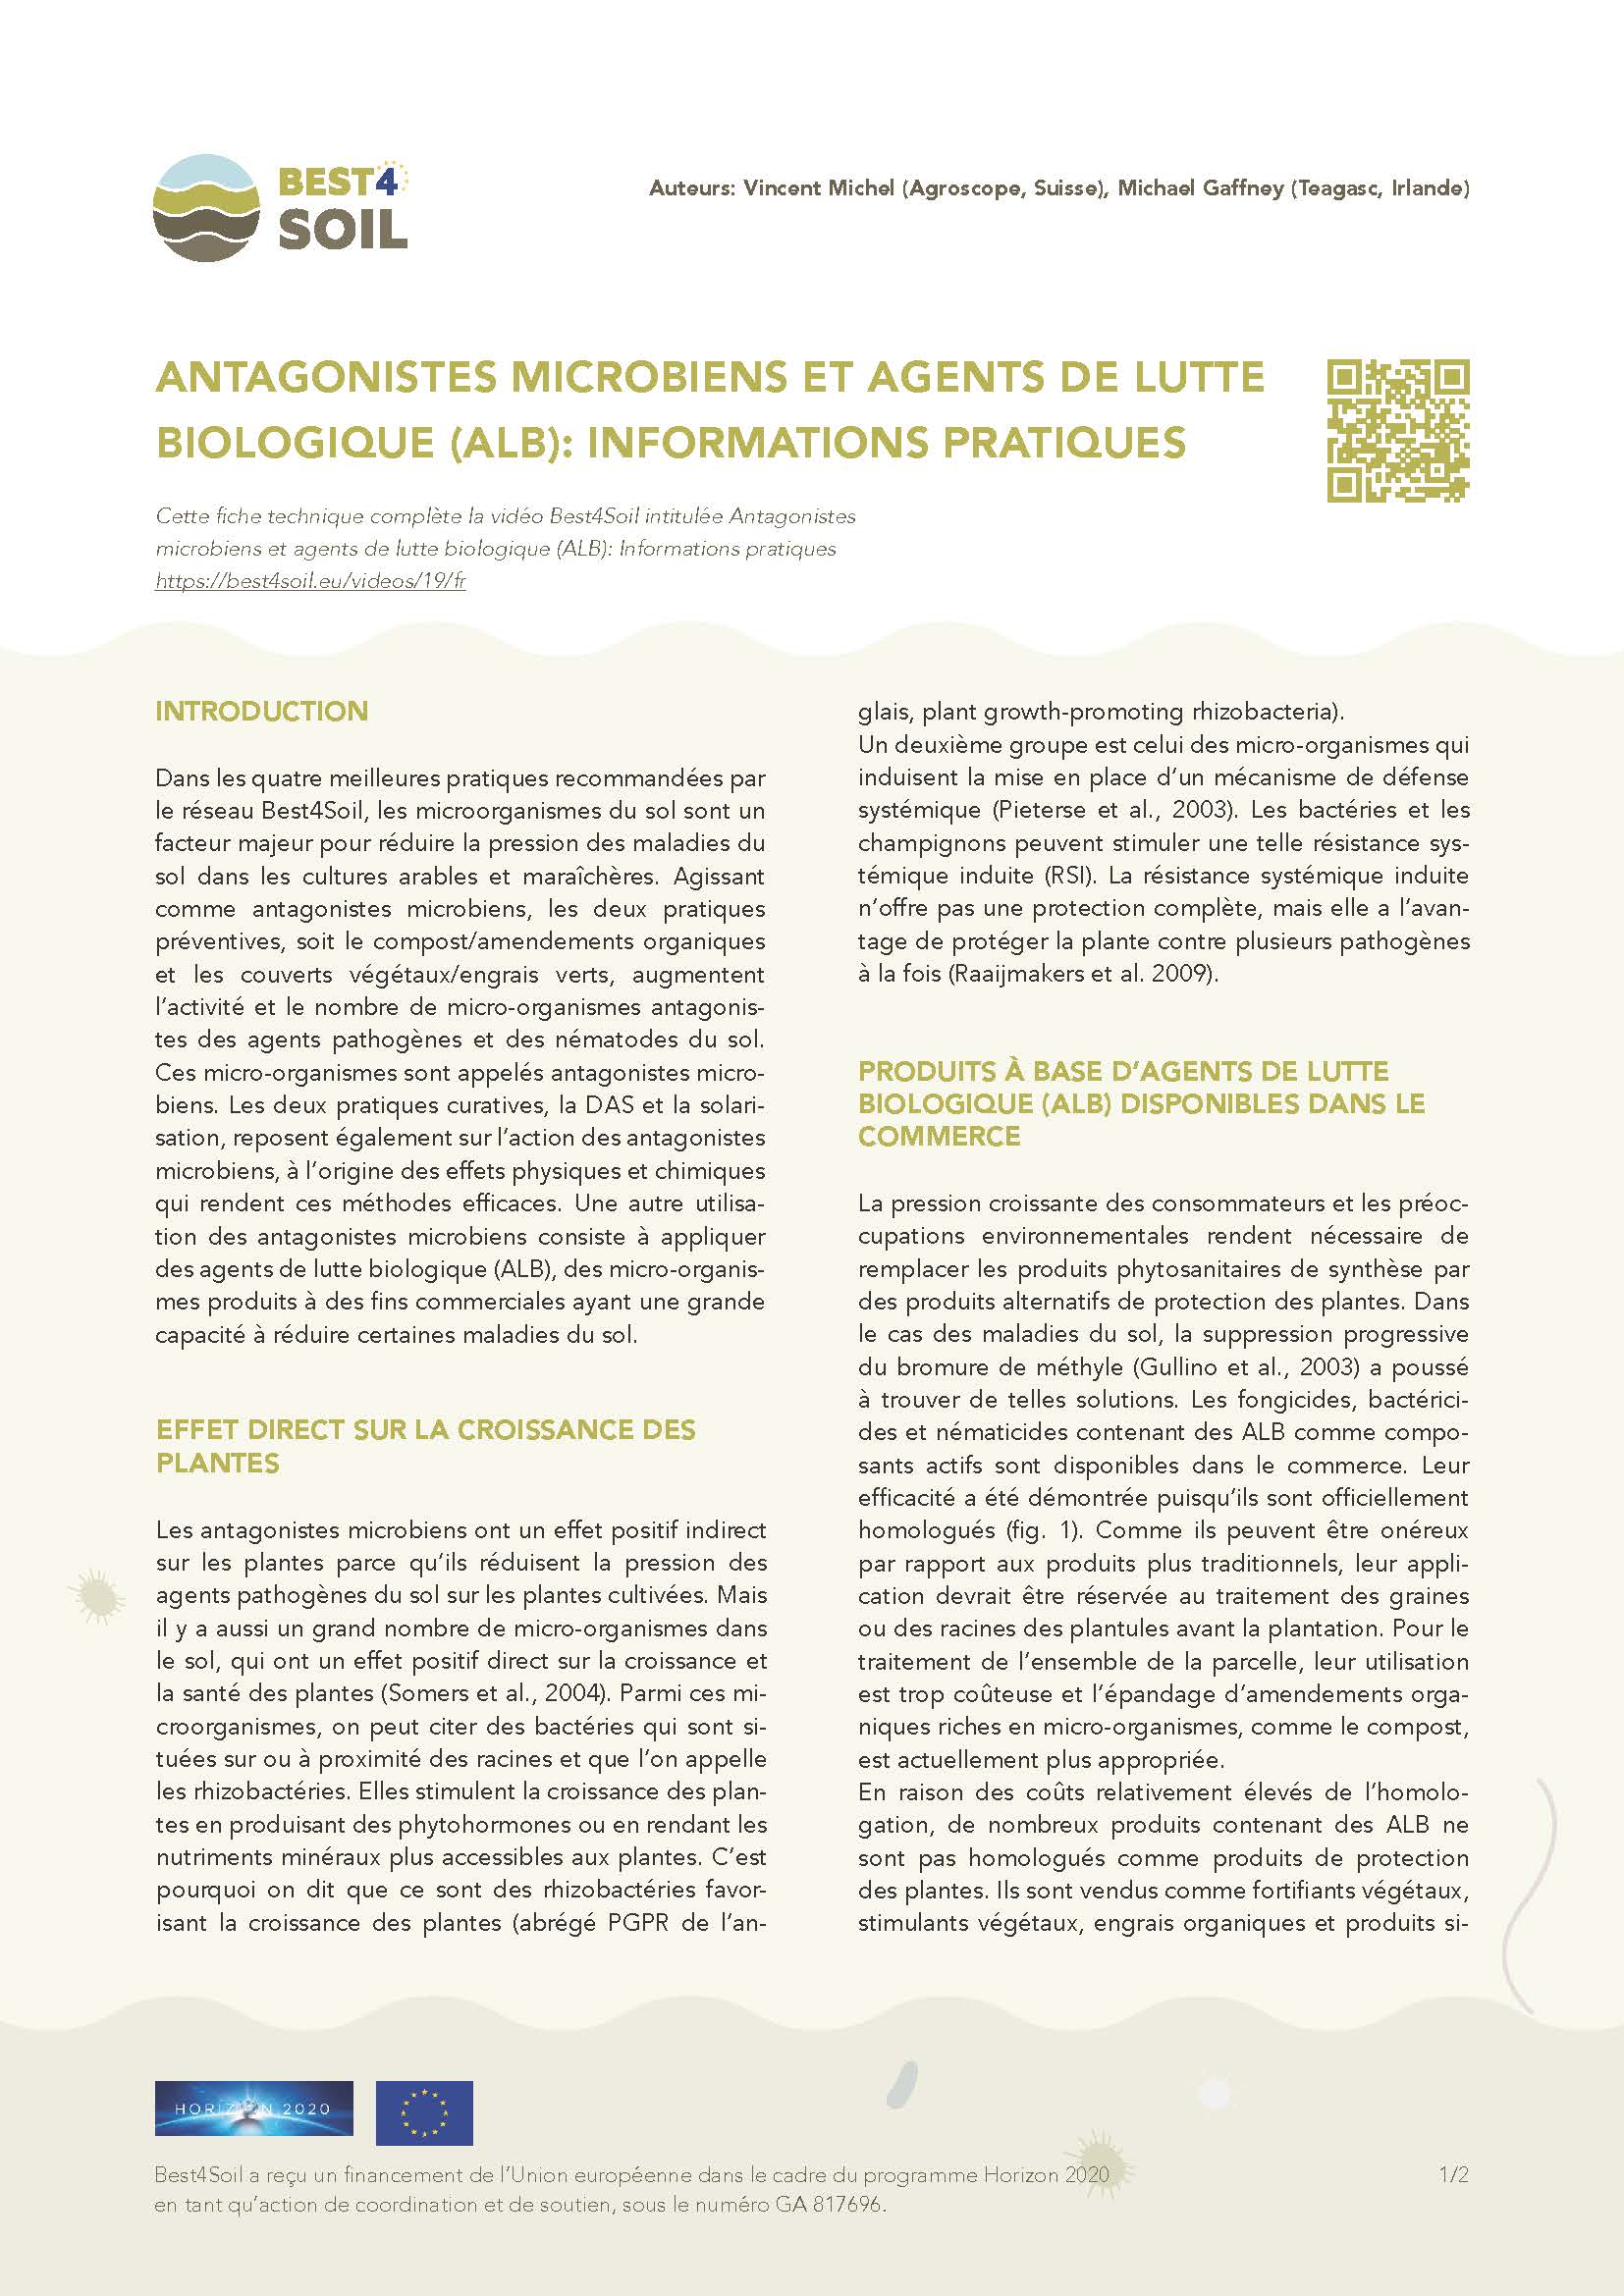 Antagoniści drobnoustrojów i bca: informacje praktyczne (zestawienie informacji Best4Soil)